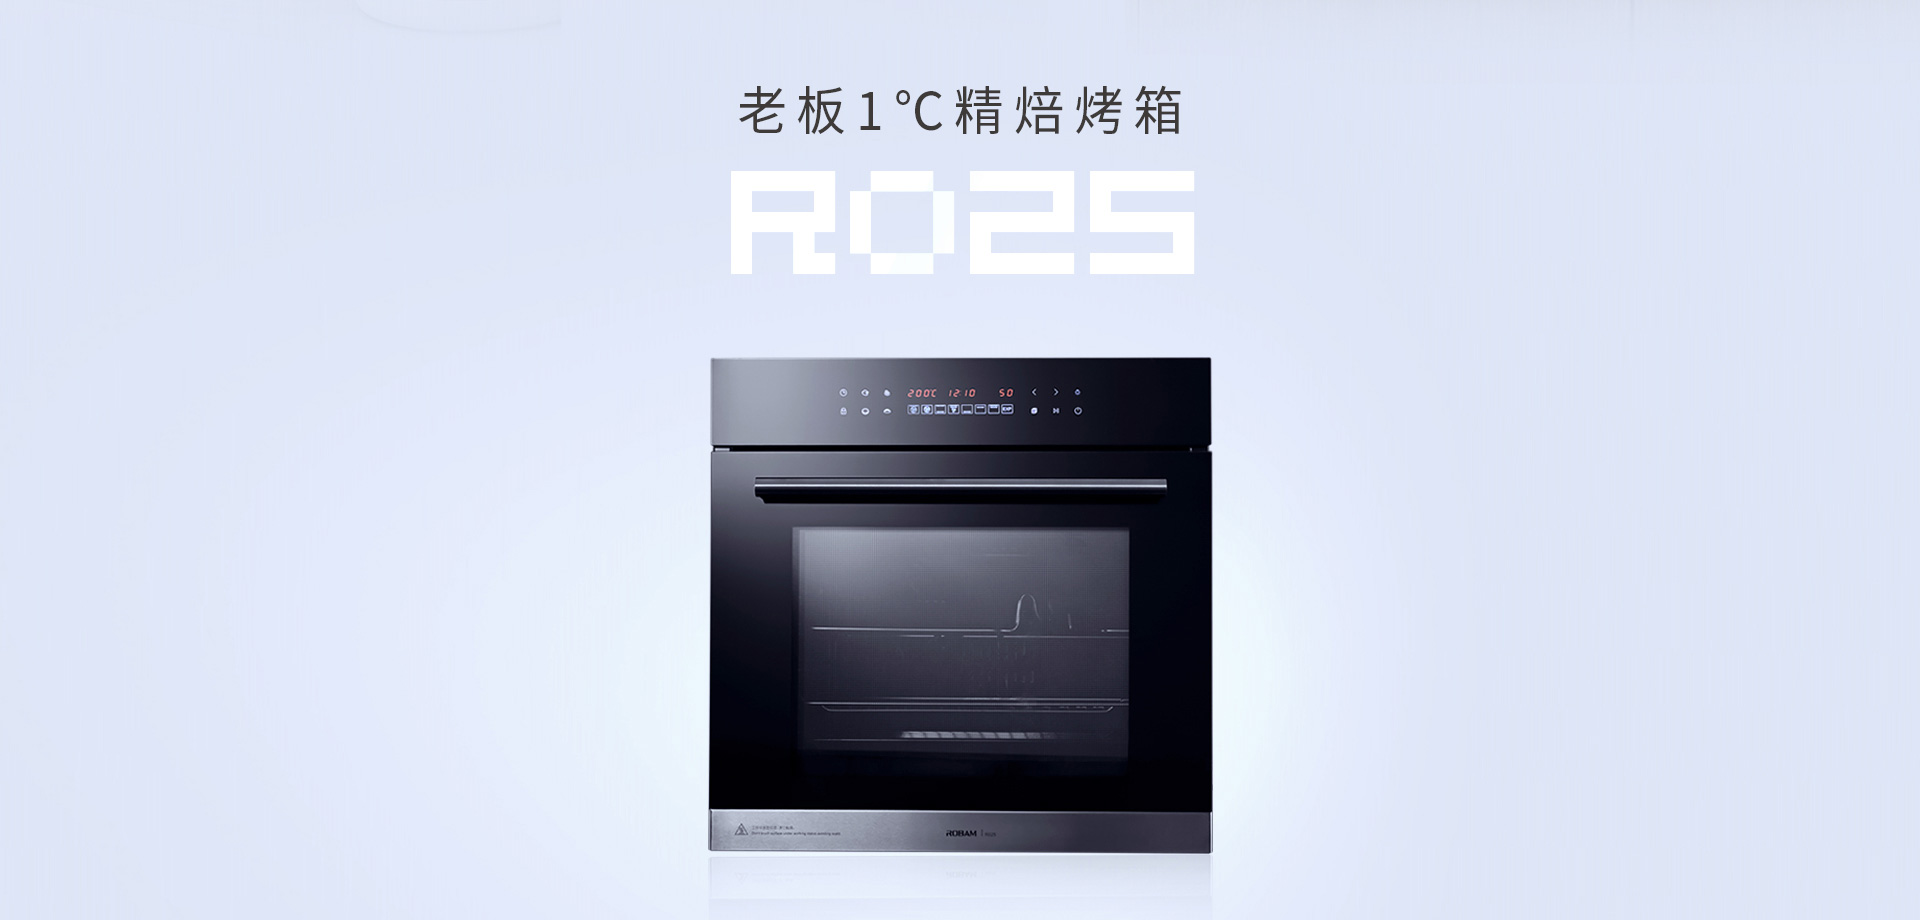 老板电器嵌入式电烤箱|r025